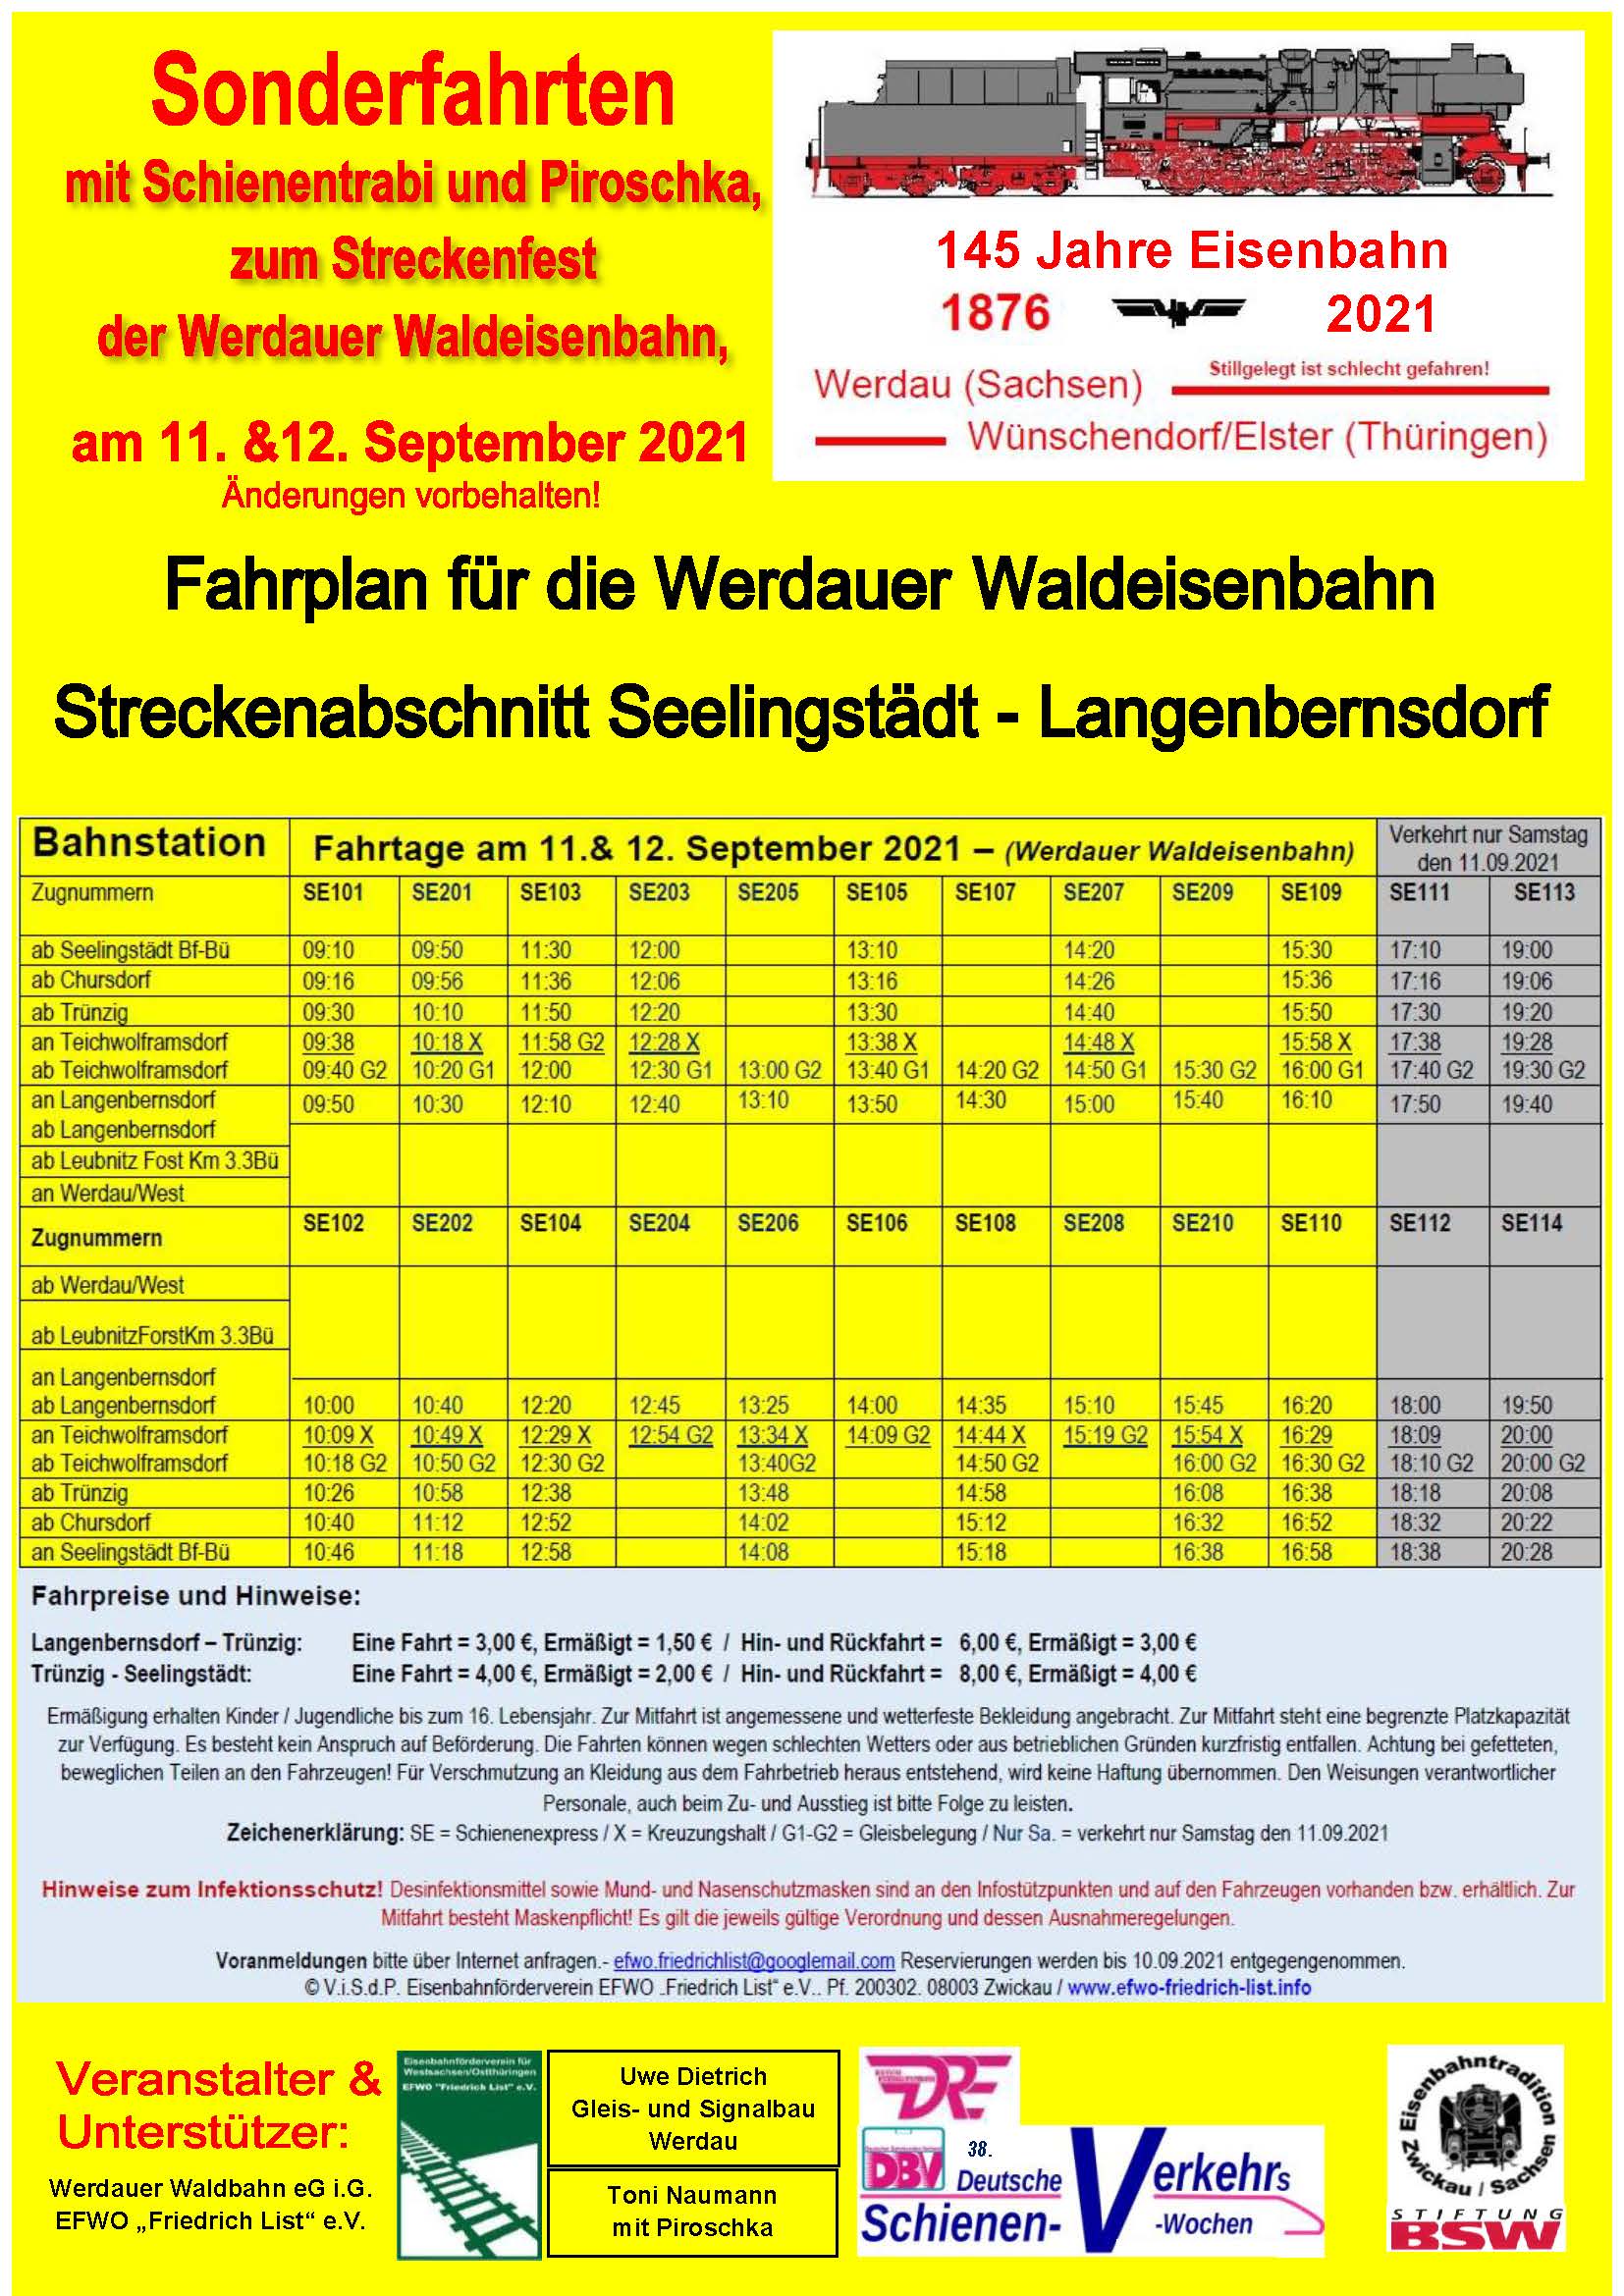 EFWO Sonderfahrplan Werdauer Waldbahn 11.12.09.2021Neu